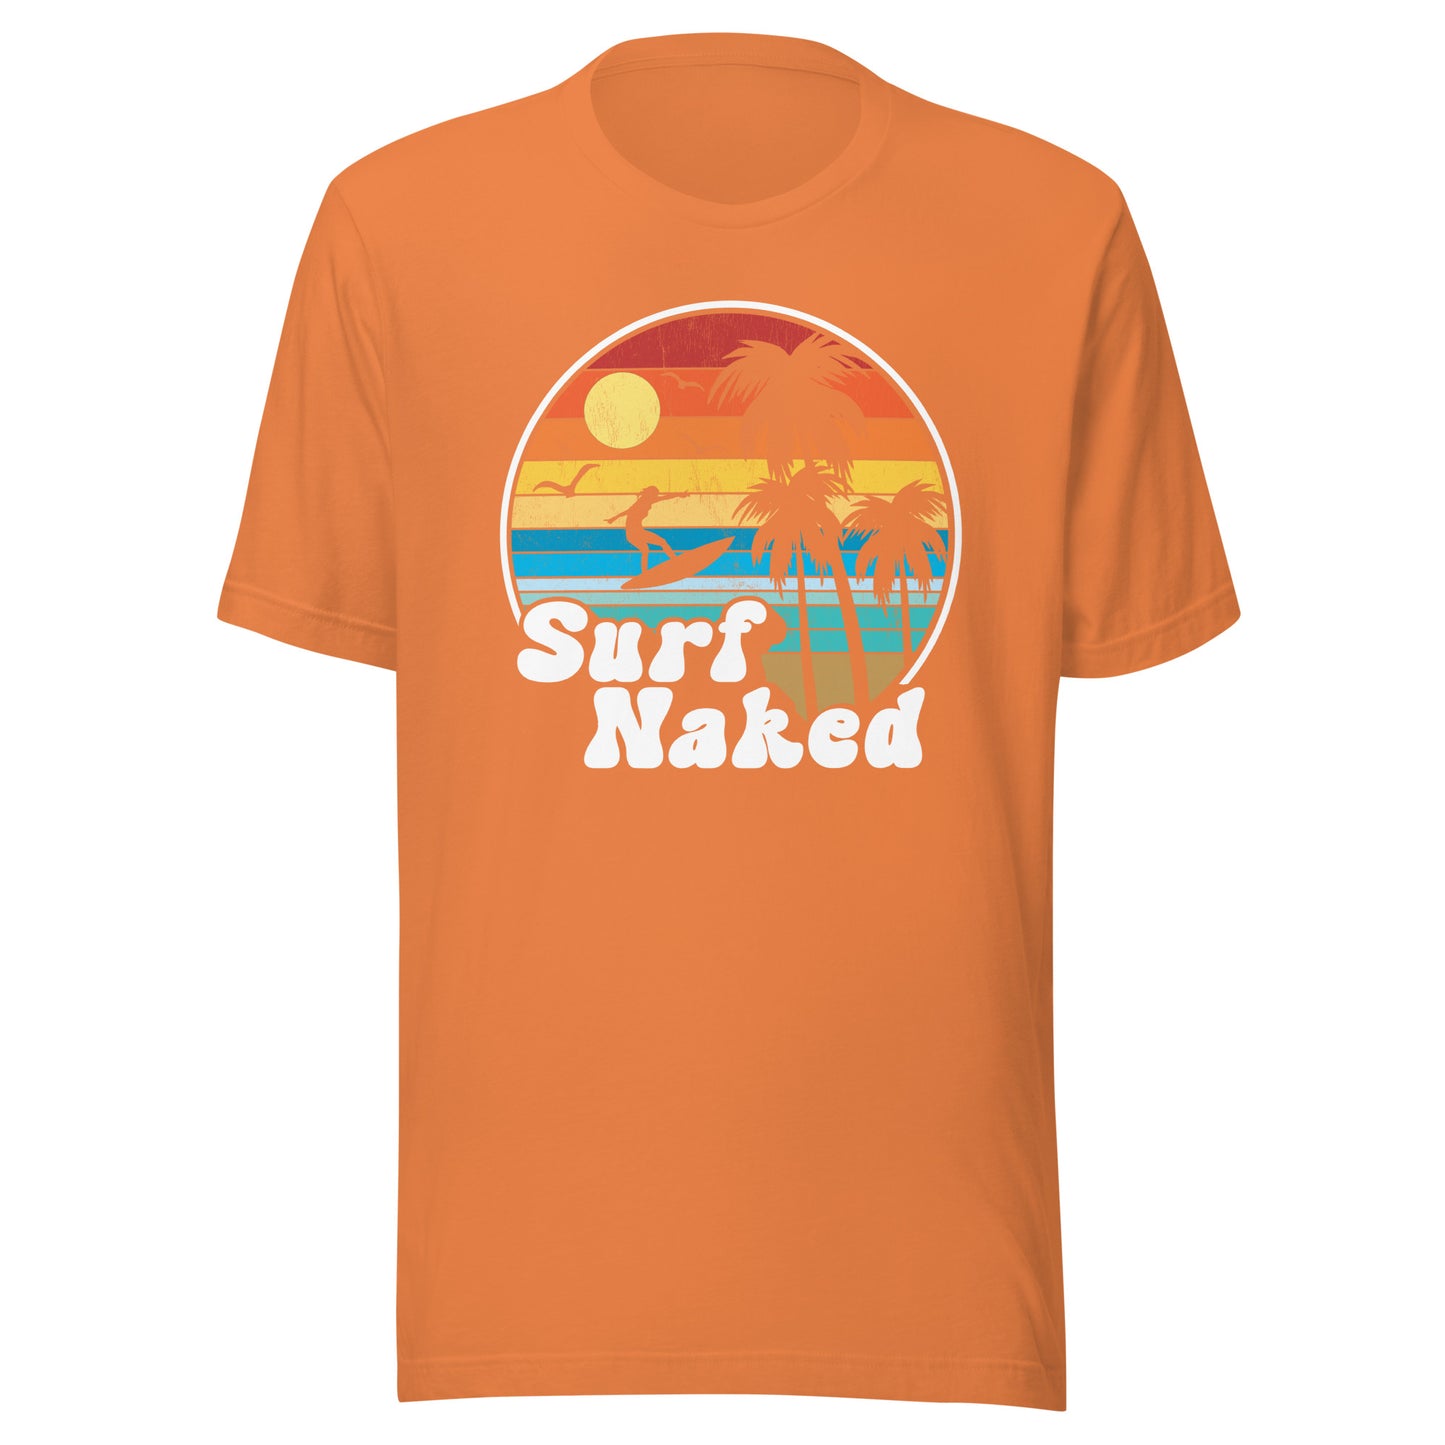 Surf Naked Sunset Beach Tee